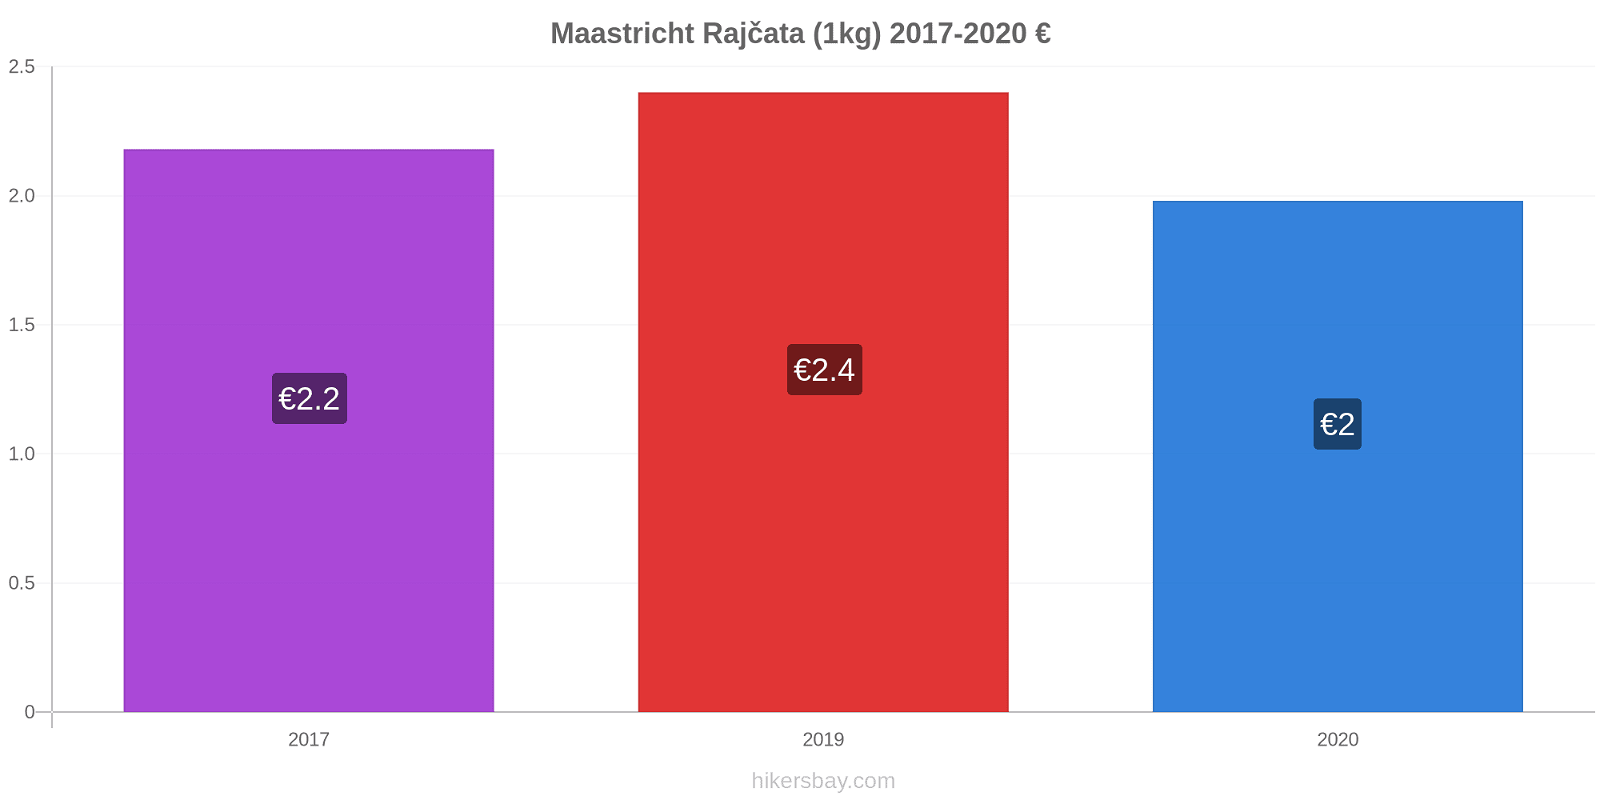 Maastricht změny cen Rajčata (1kg) hikersbay.com